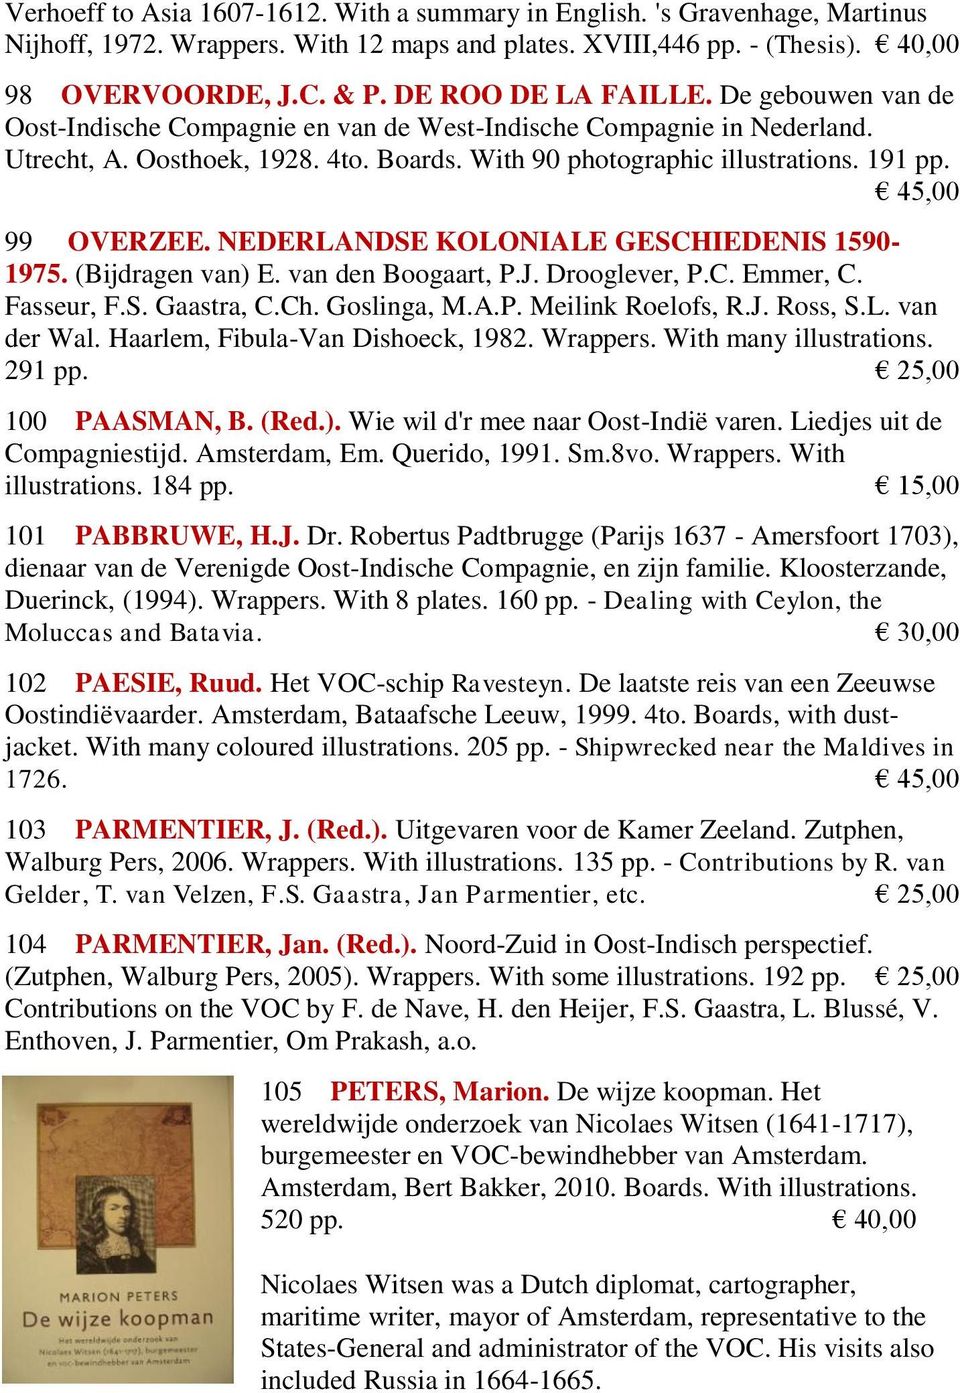 45,00 99 OVERZEE. NEDERLANDSE KOLONIALE GESCHIEDENIS 1590-1975. (Bijdragen van) E. van den Boogaart, P.J. Drooglever, P.C. Emmer, C. Fasseur, F.S. Gaastra, C.Ch. Goslinga, M.A.P. Meilink Roelofs, R.J. Ross, S.